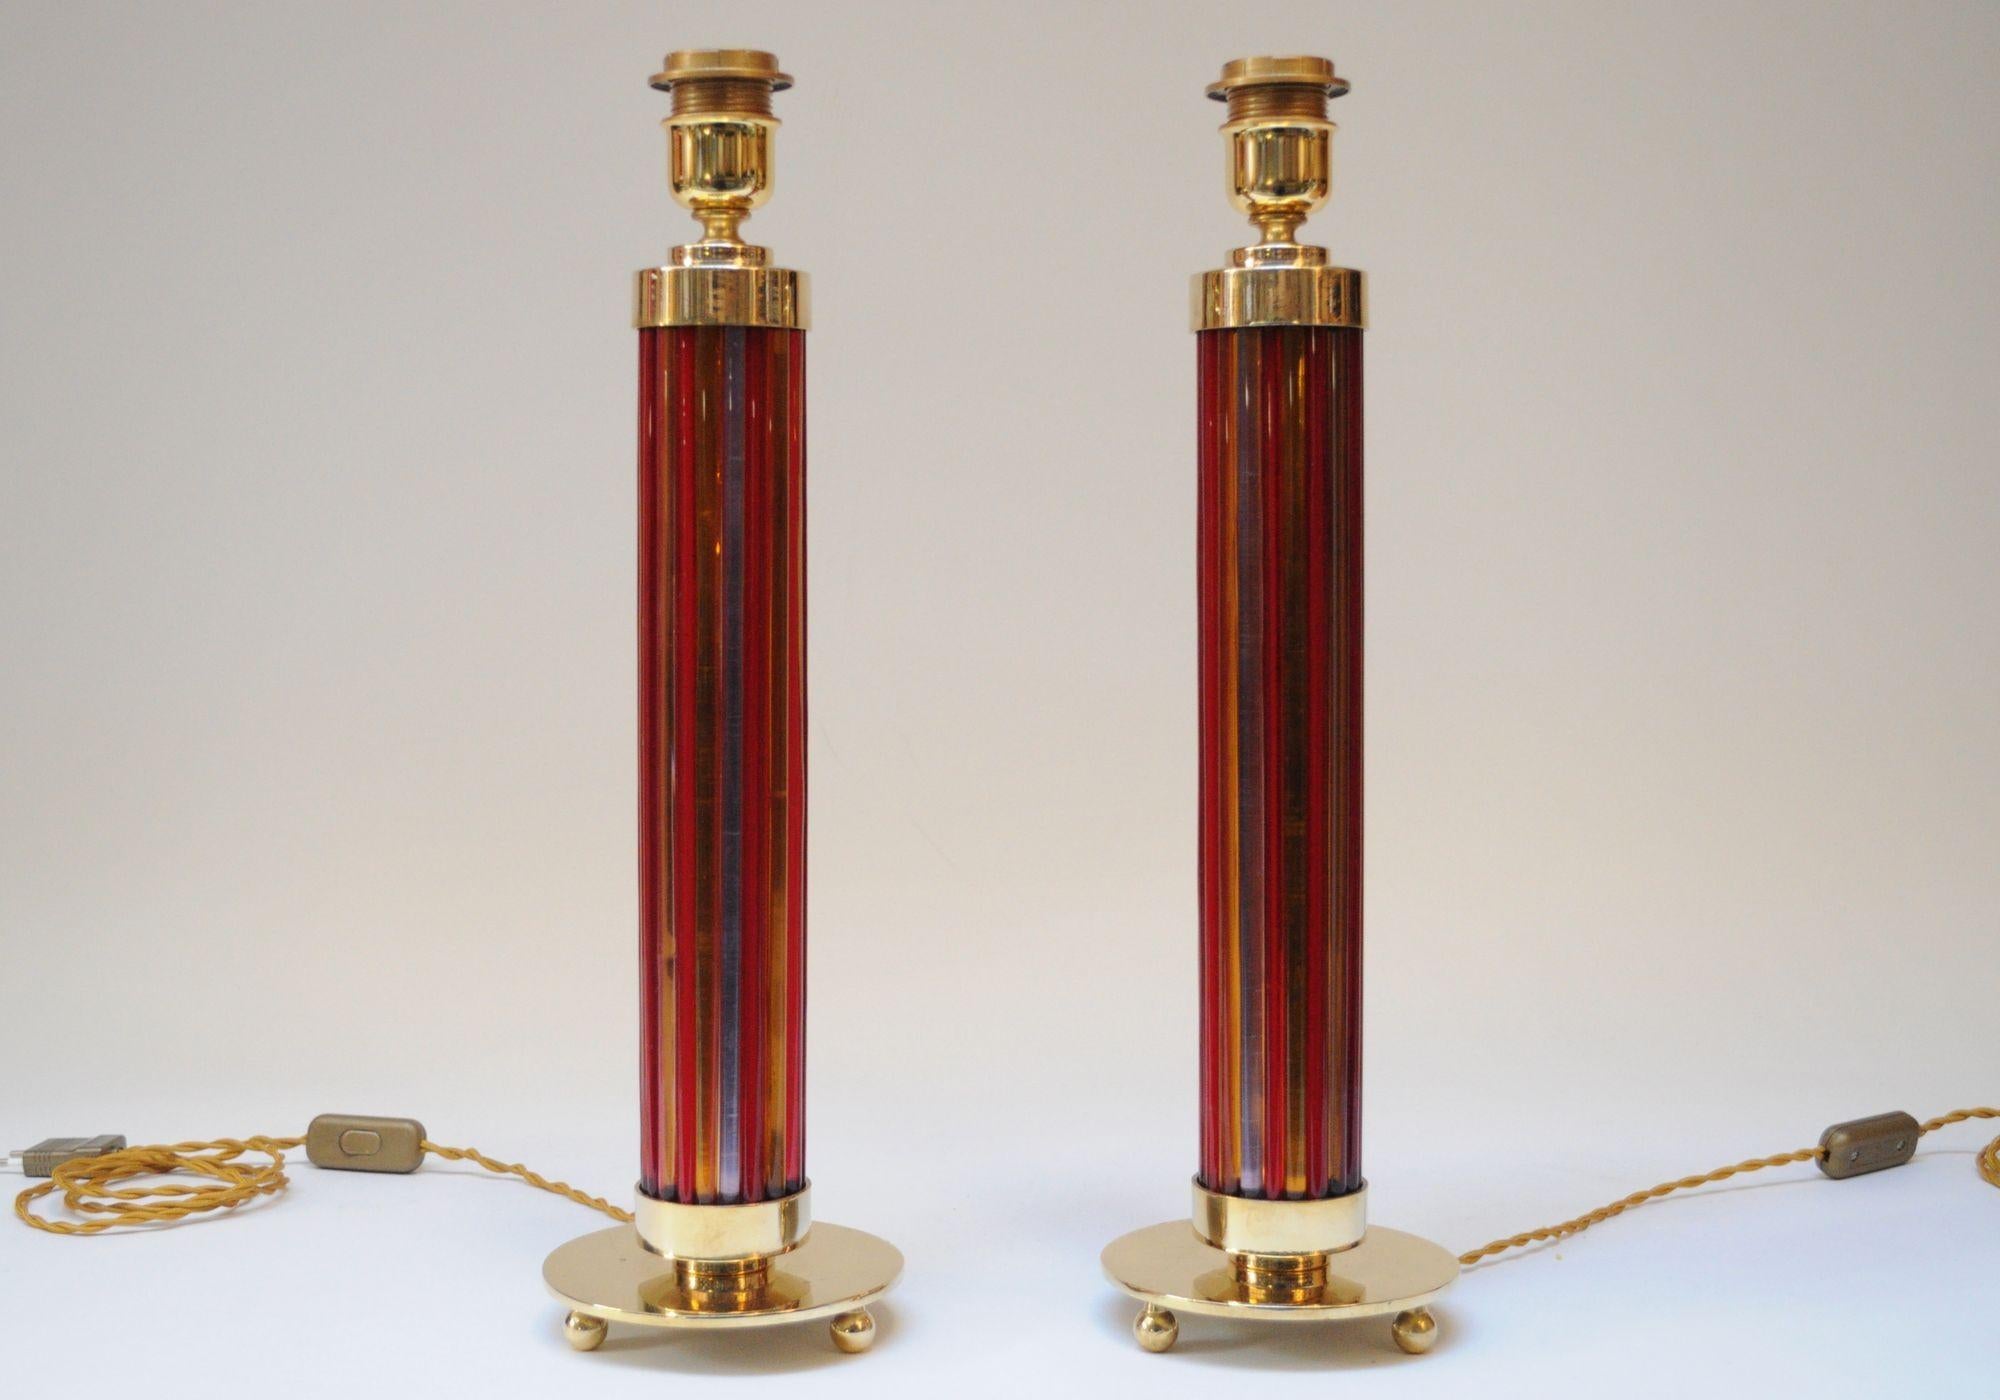 Bunte, elegante Murano-Tischlampe (ca. 1950er Jahre, Italien).
Besteht aus einzelnen Murano-Glassäulen in Orange, Rot und Violett, die Säulen bilden und oben und unten von Messingkappen und einem Sockel mit drei Kugeln getragen werden.
Die Blasen